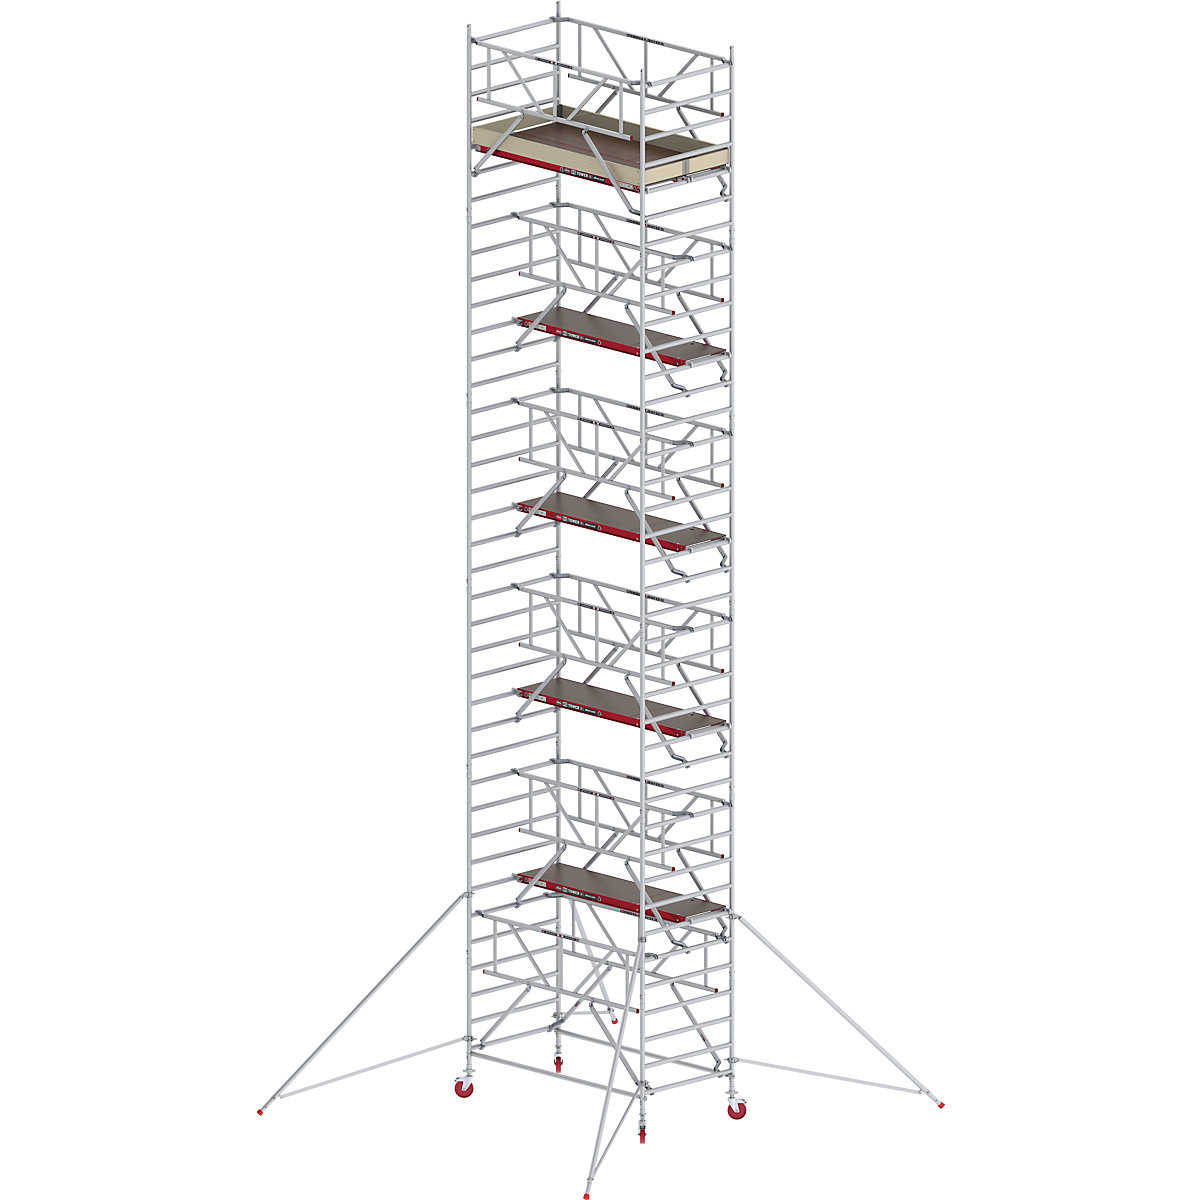 Trabattello mobile RS TOWER 42 largo con Safe-Quick® – Altrex, piattaforma in legno, lunghezza 1,85 m, altezza di lavoro 12,2 m-11